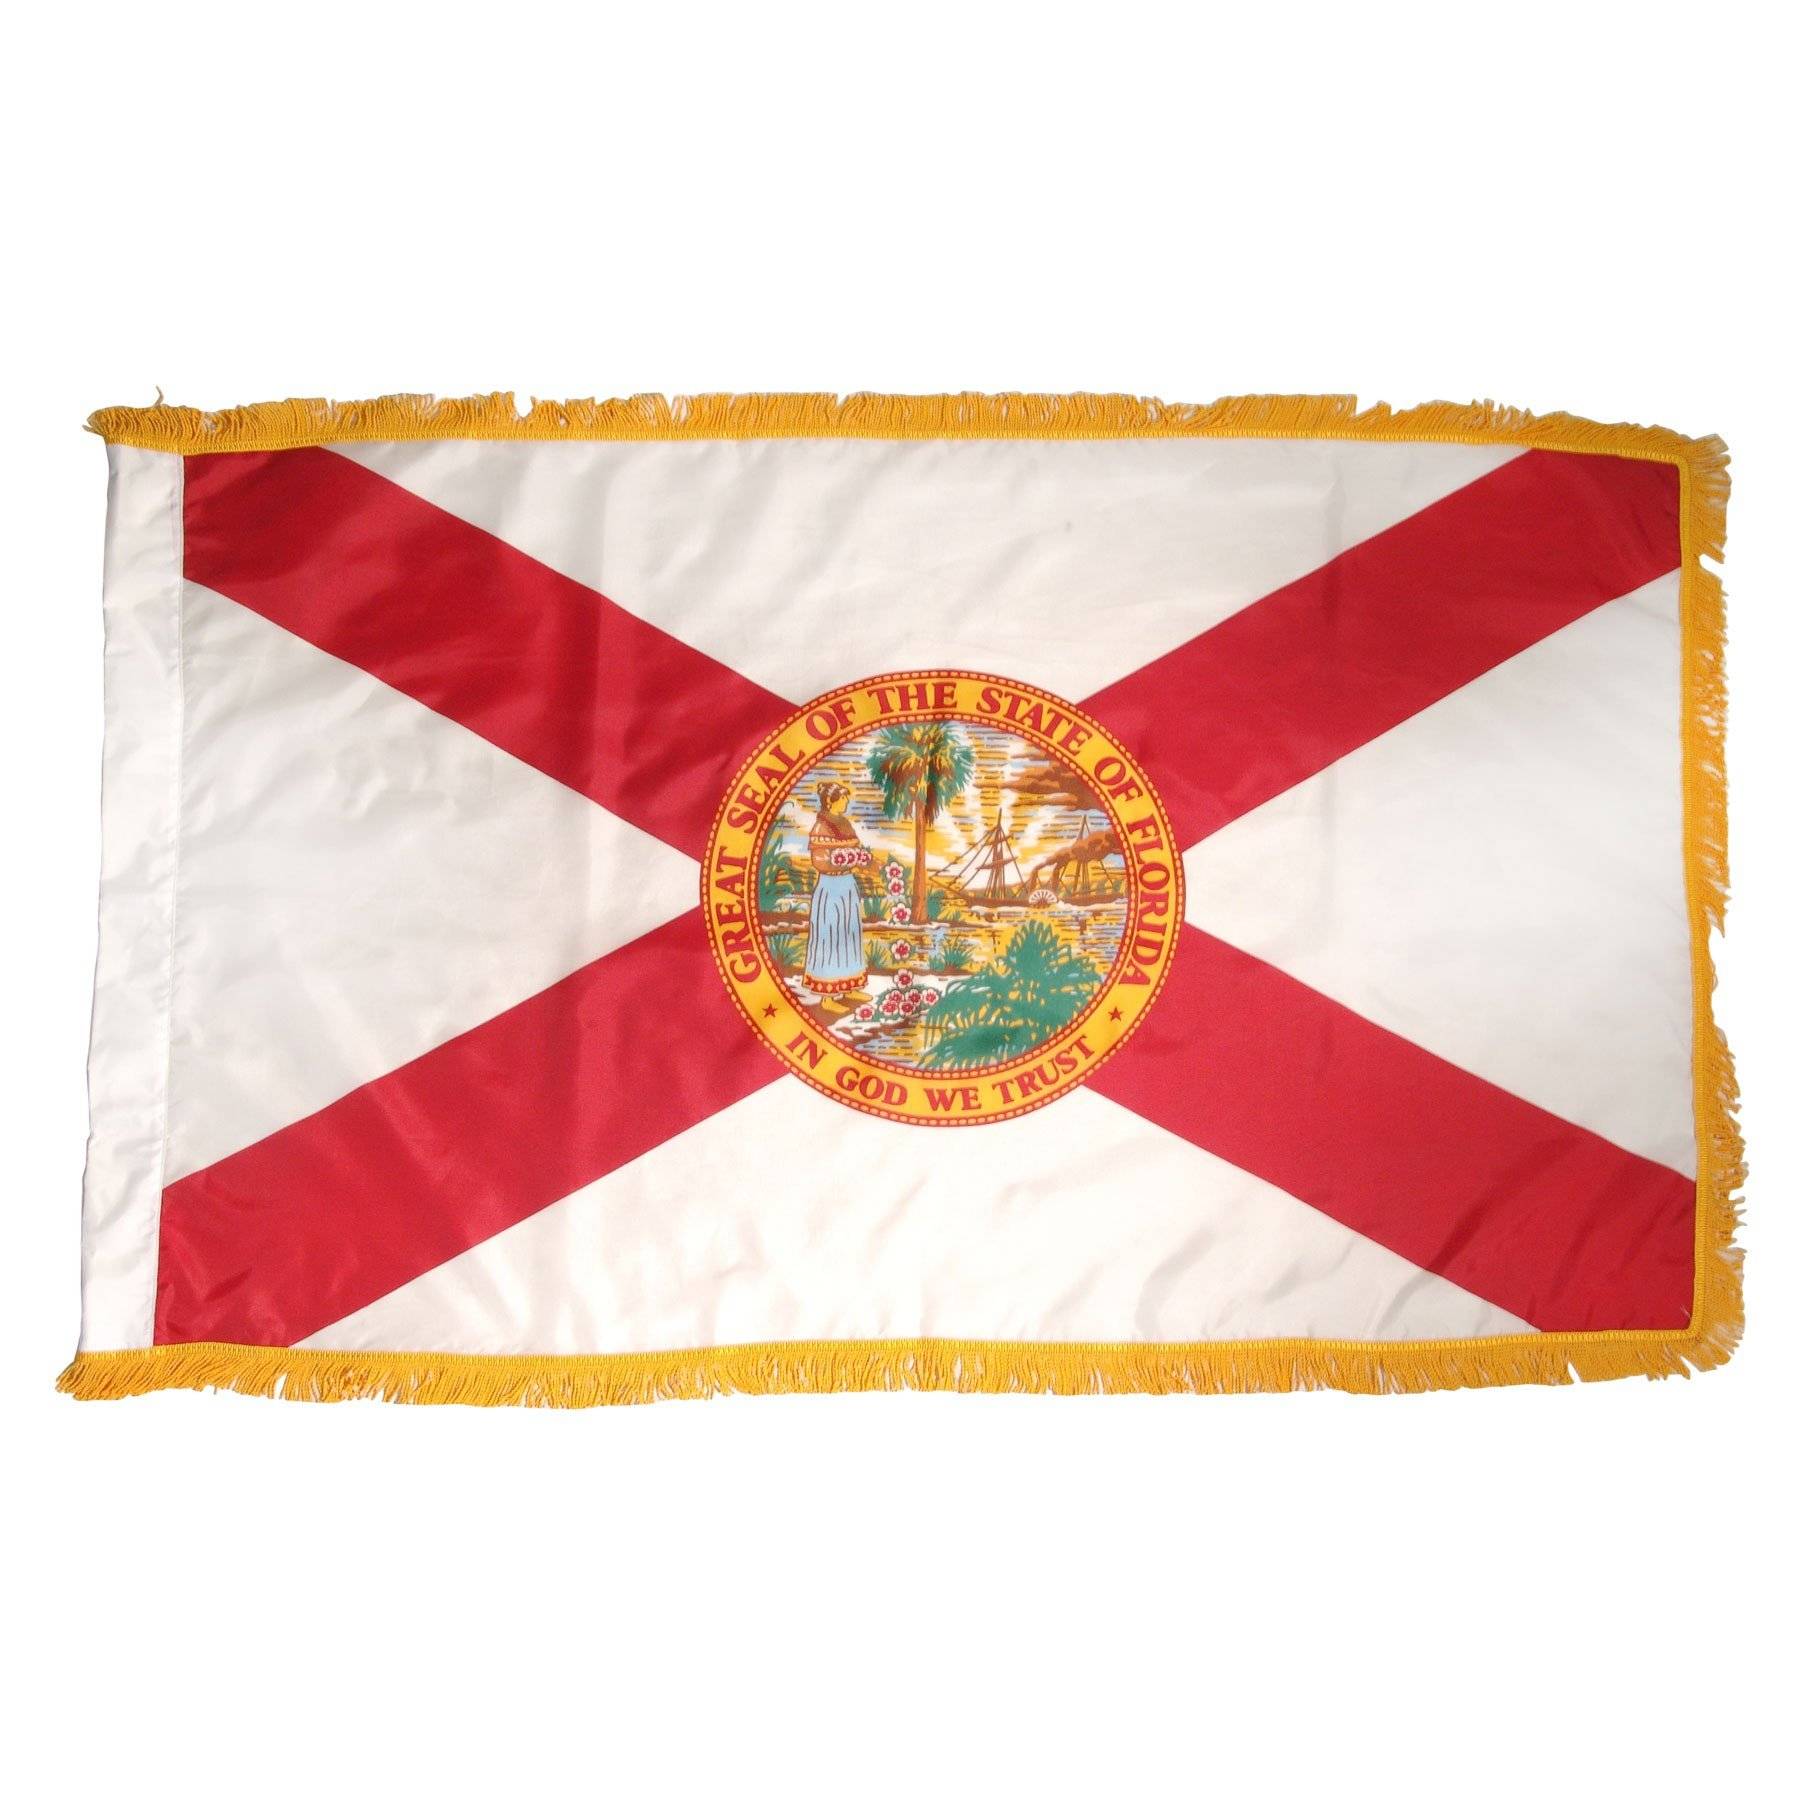 Florida Flag - Indoor sleeve hem with Fringe - All Sizes - Nylon Dyed Made in USA.